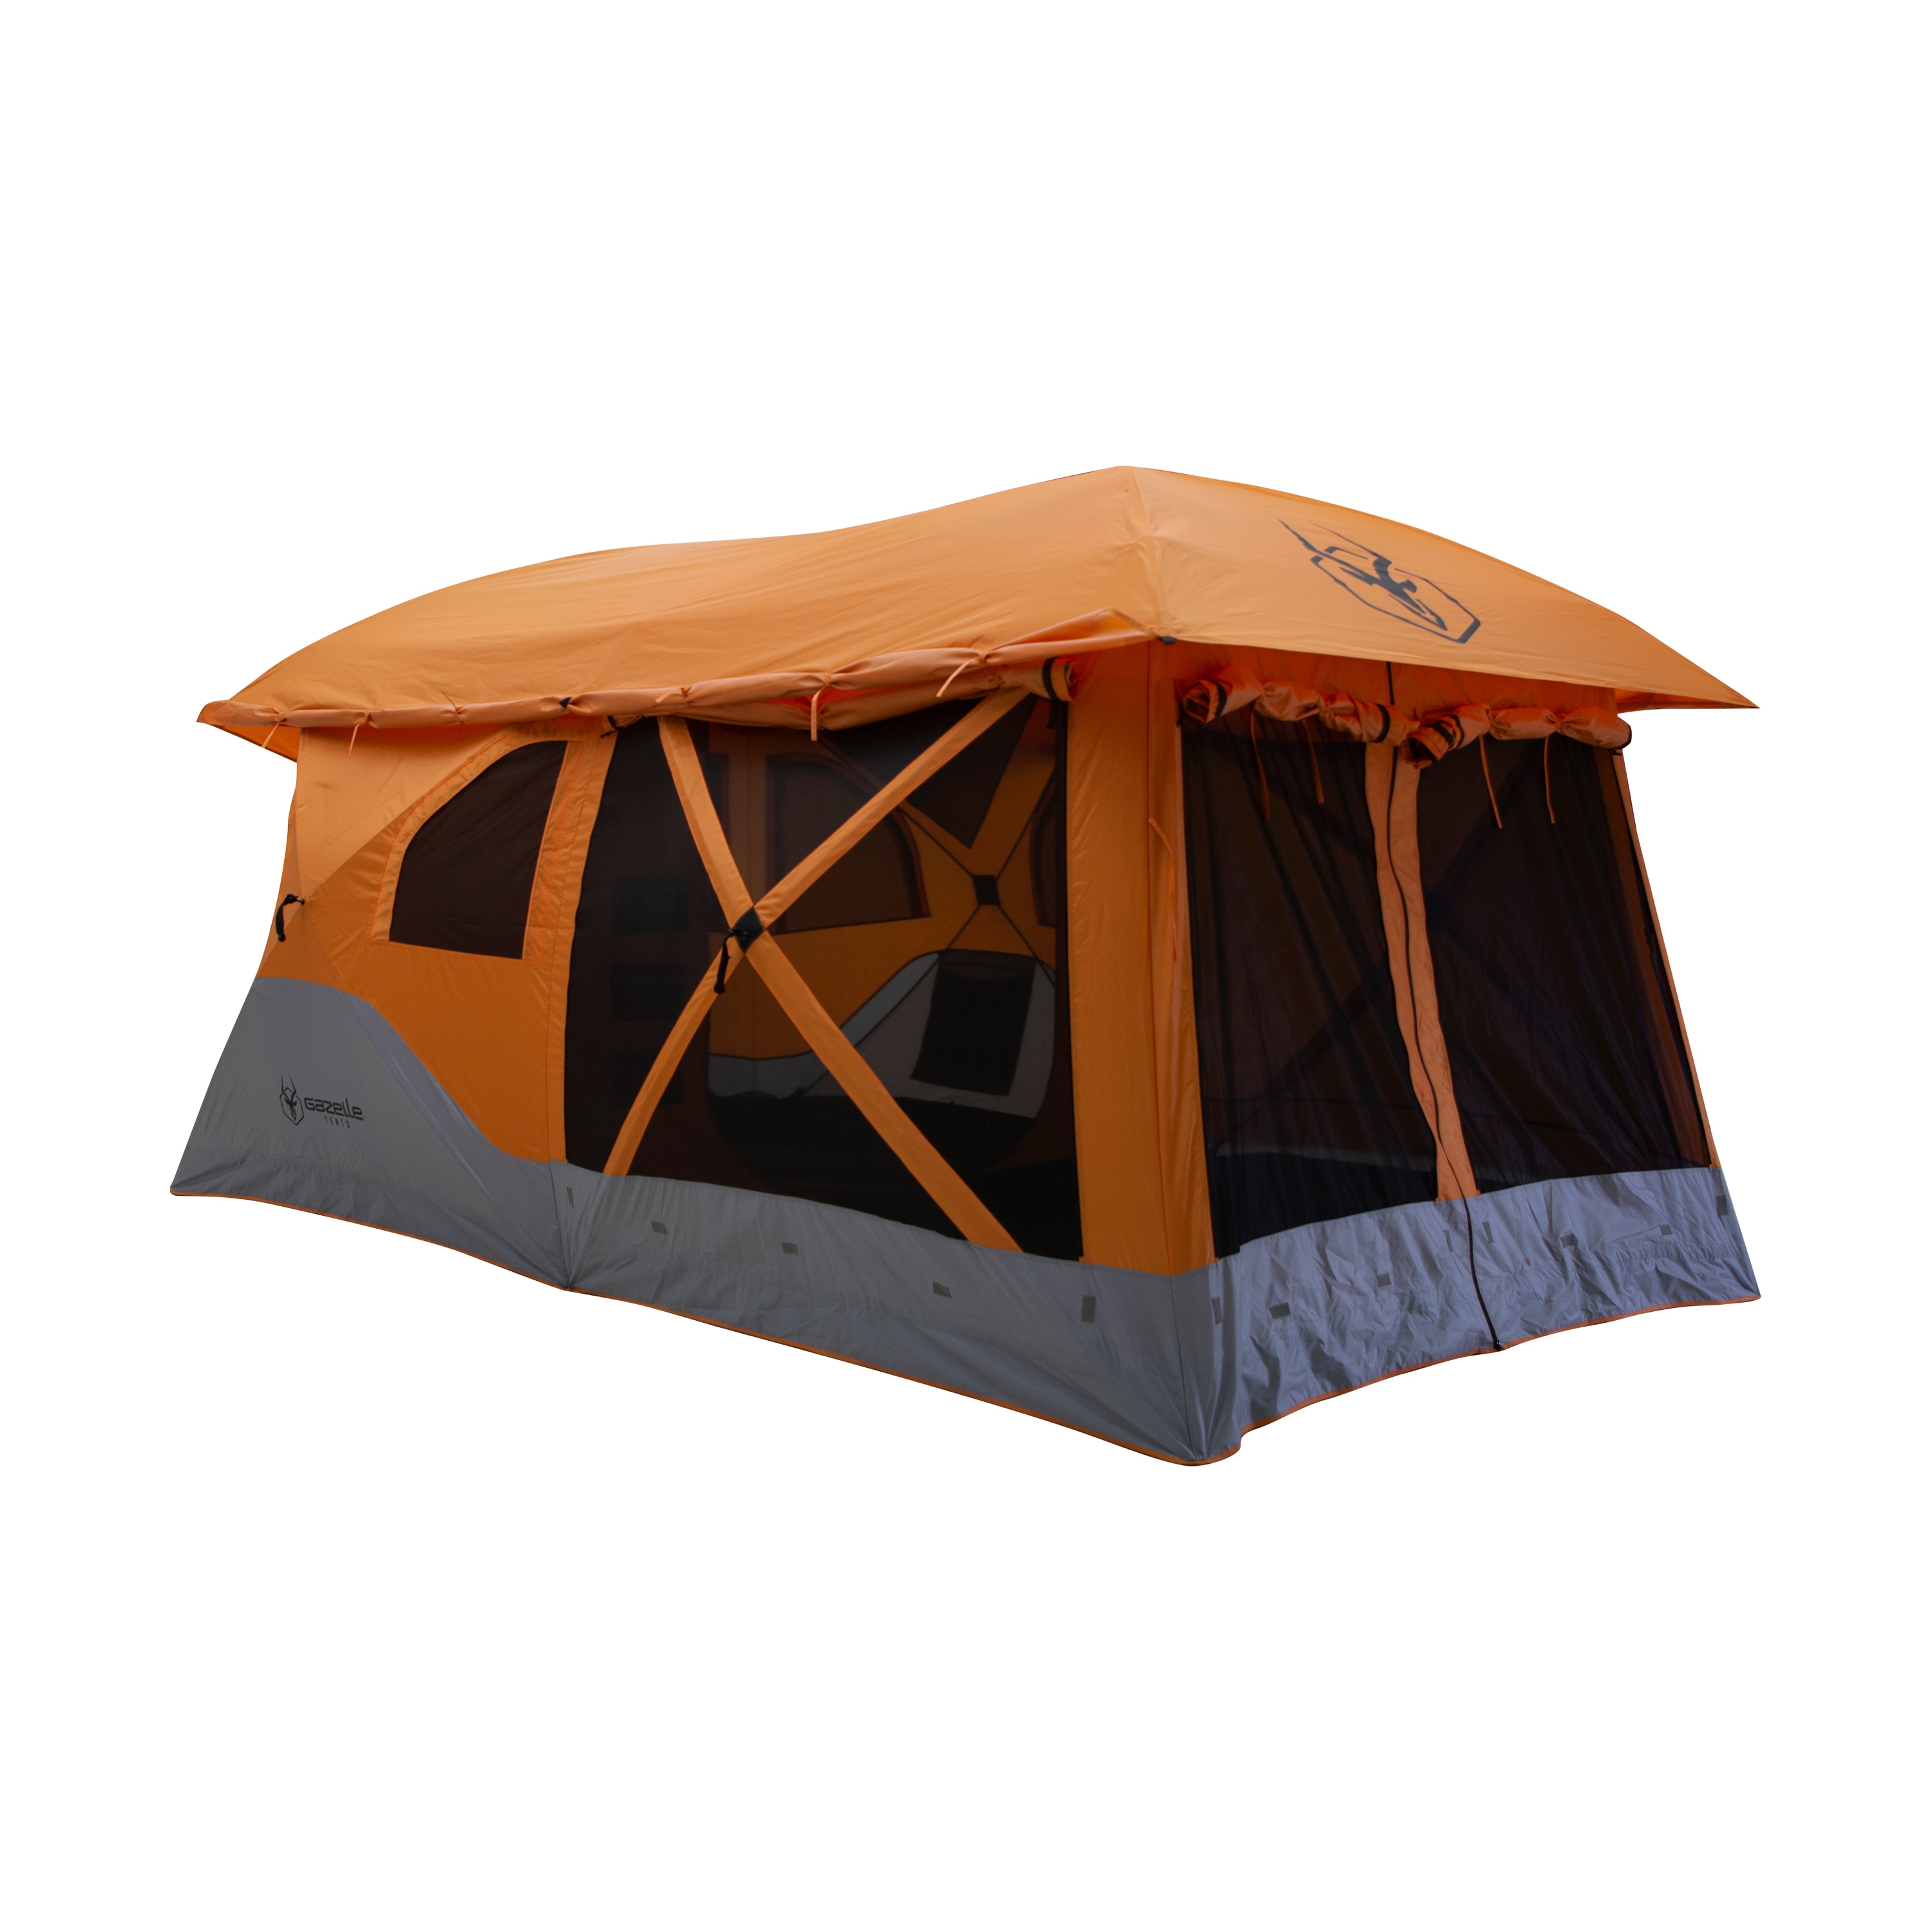 Camping Tents at